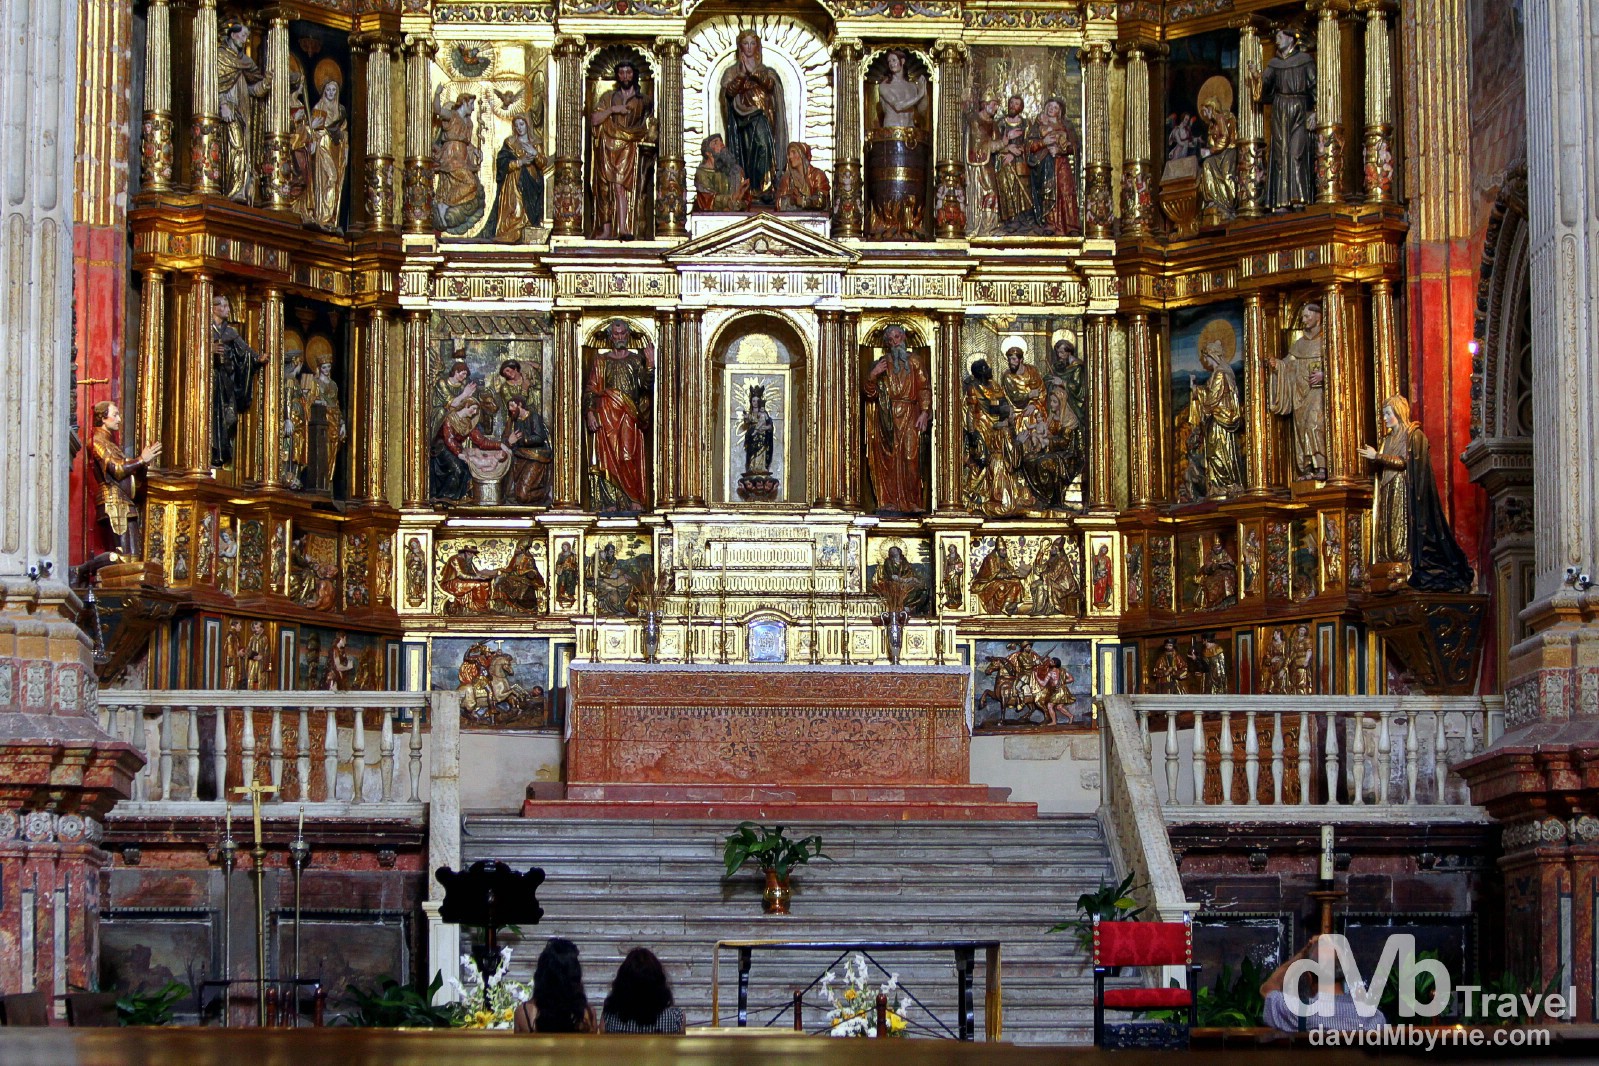 Inside the church of the Monasterio de San Jeronimo in Granada, Andalusia, Spain. June 11th, 2014.